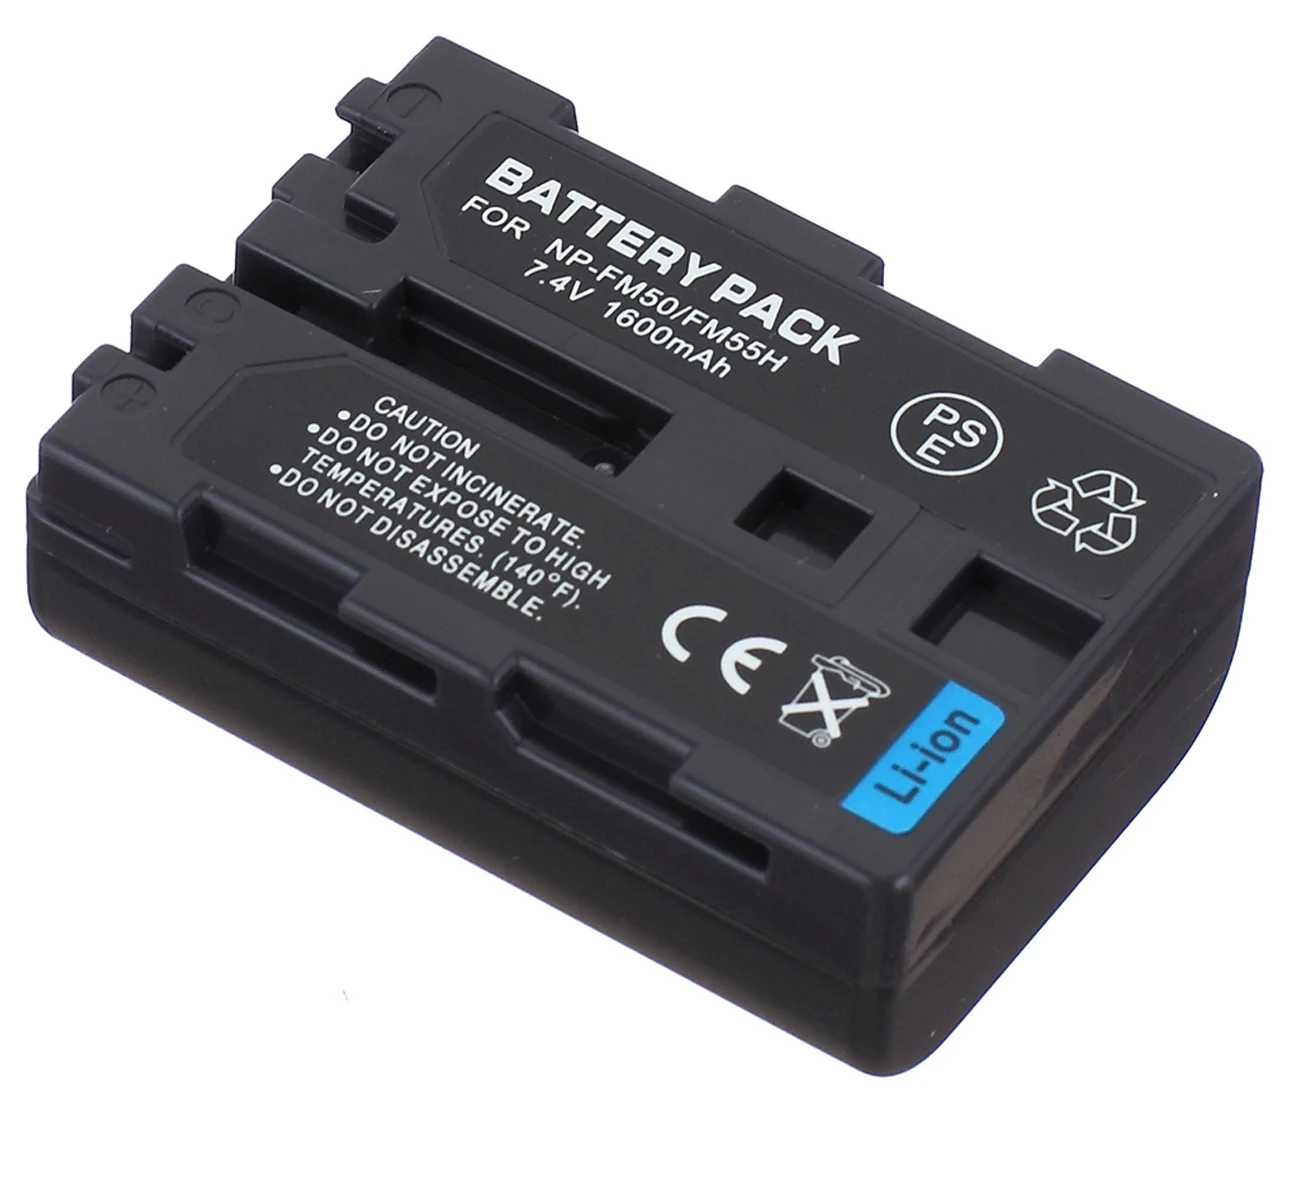 Batteri til Sony CCD-TRV208, CCD-TRV218, CCD-TRV228, CCD-TRV238, CCD-TRV338, CCD-TRV438 Handycam Camcorderen